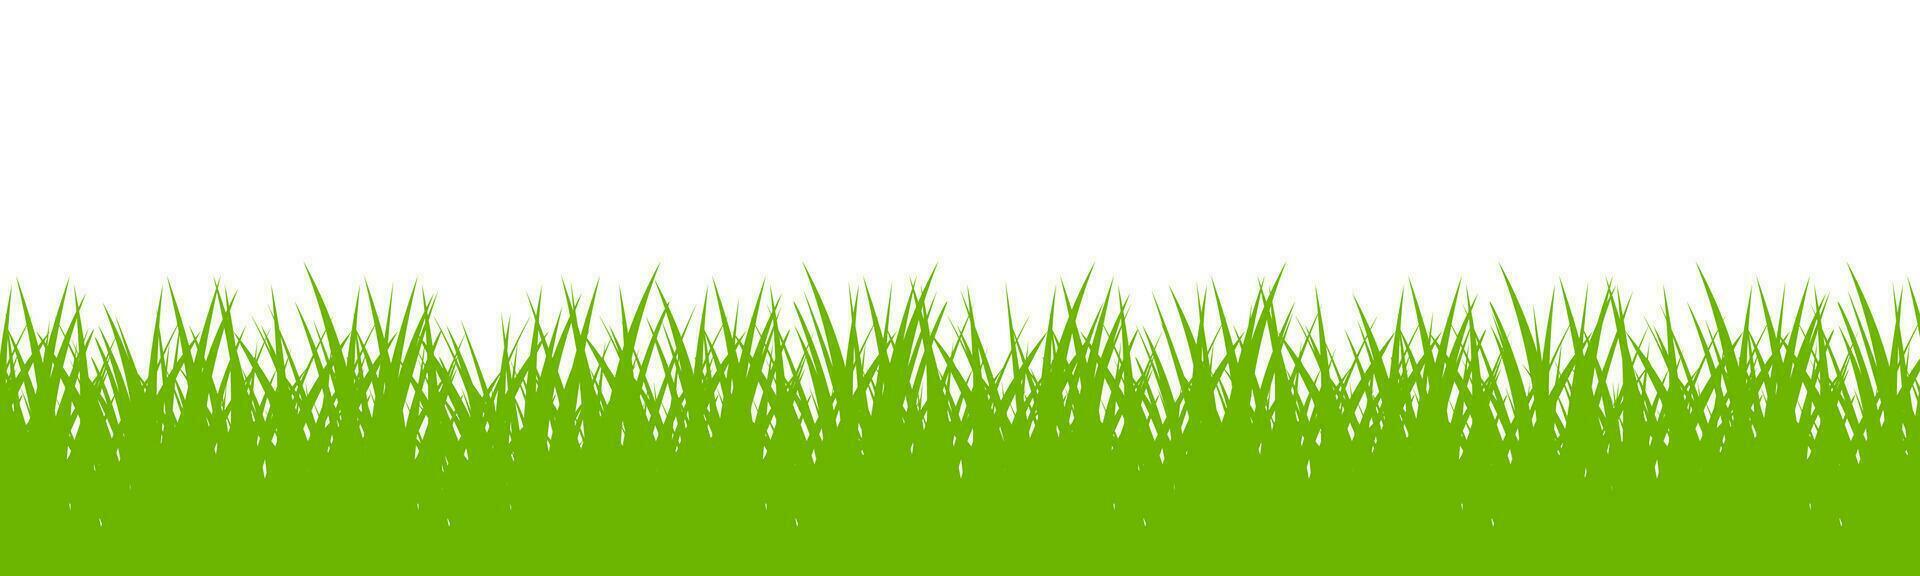 green grass vector background